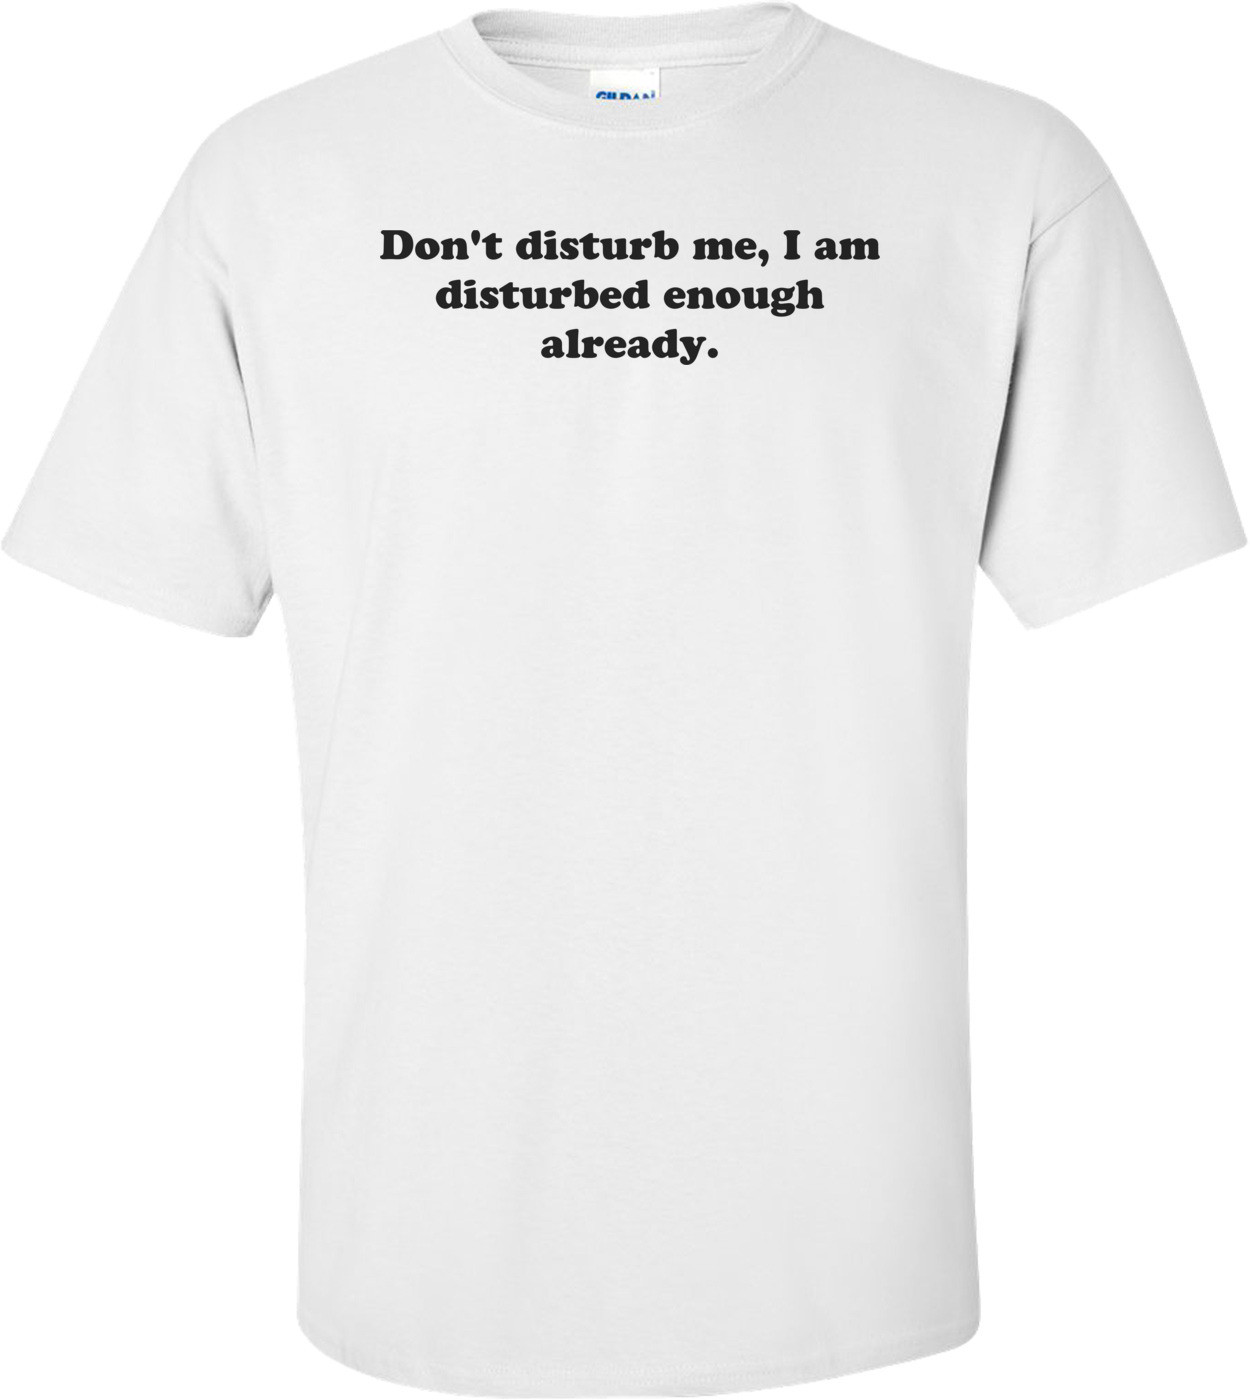 Don't disturb me, I am disturbed enough already. Shirt